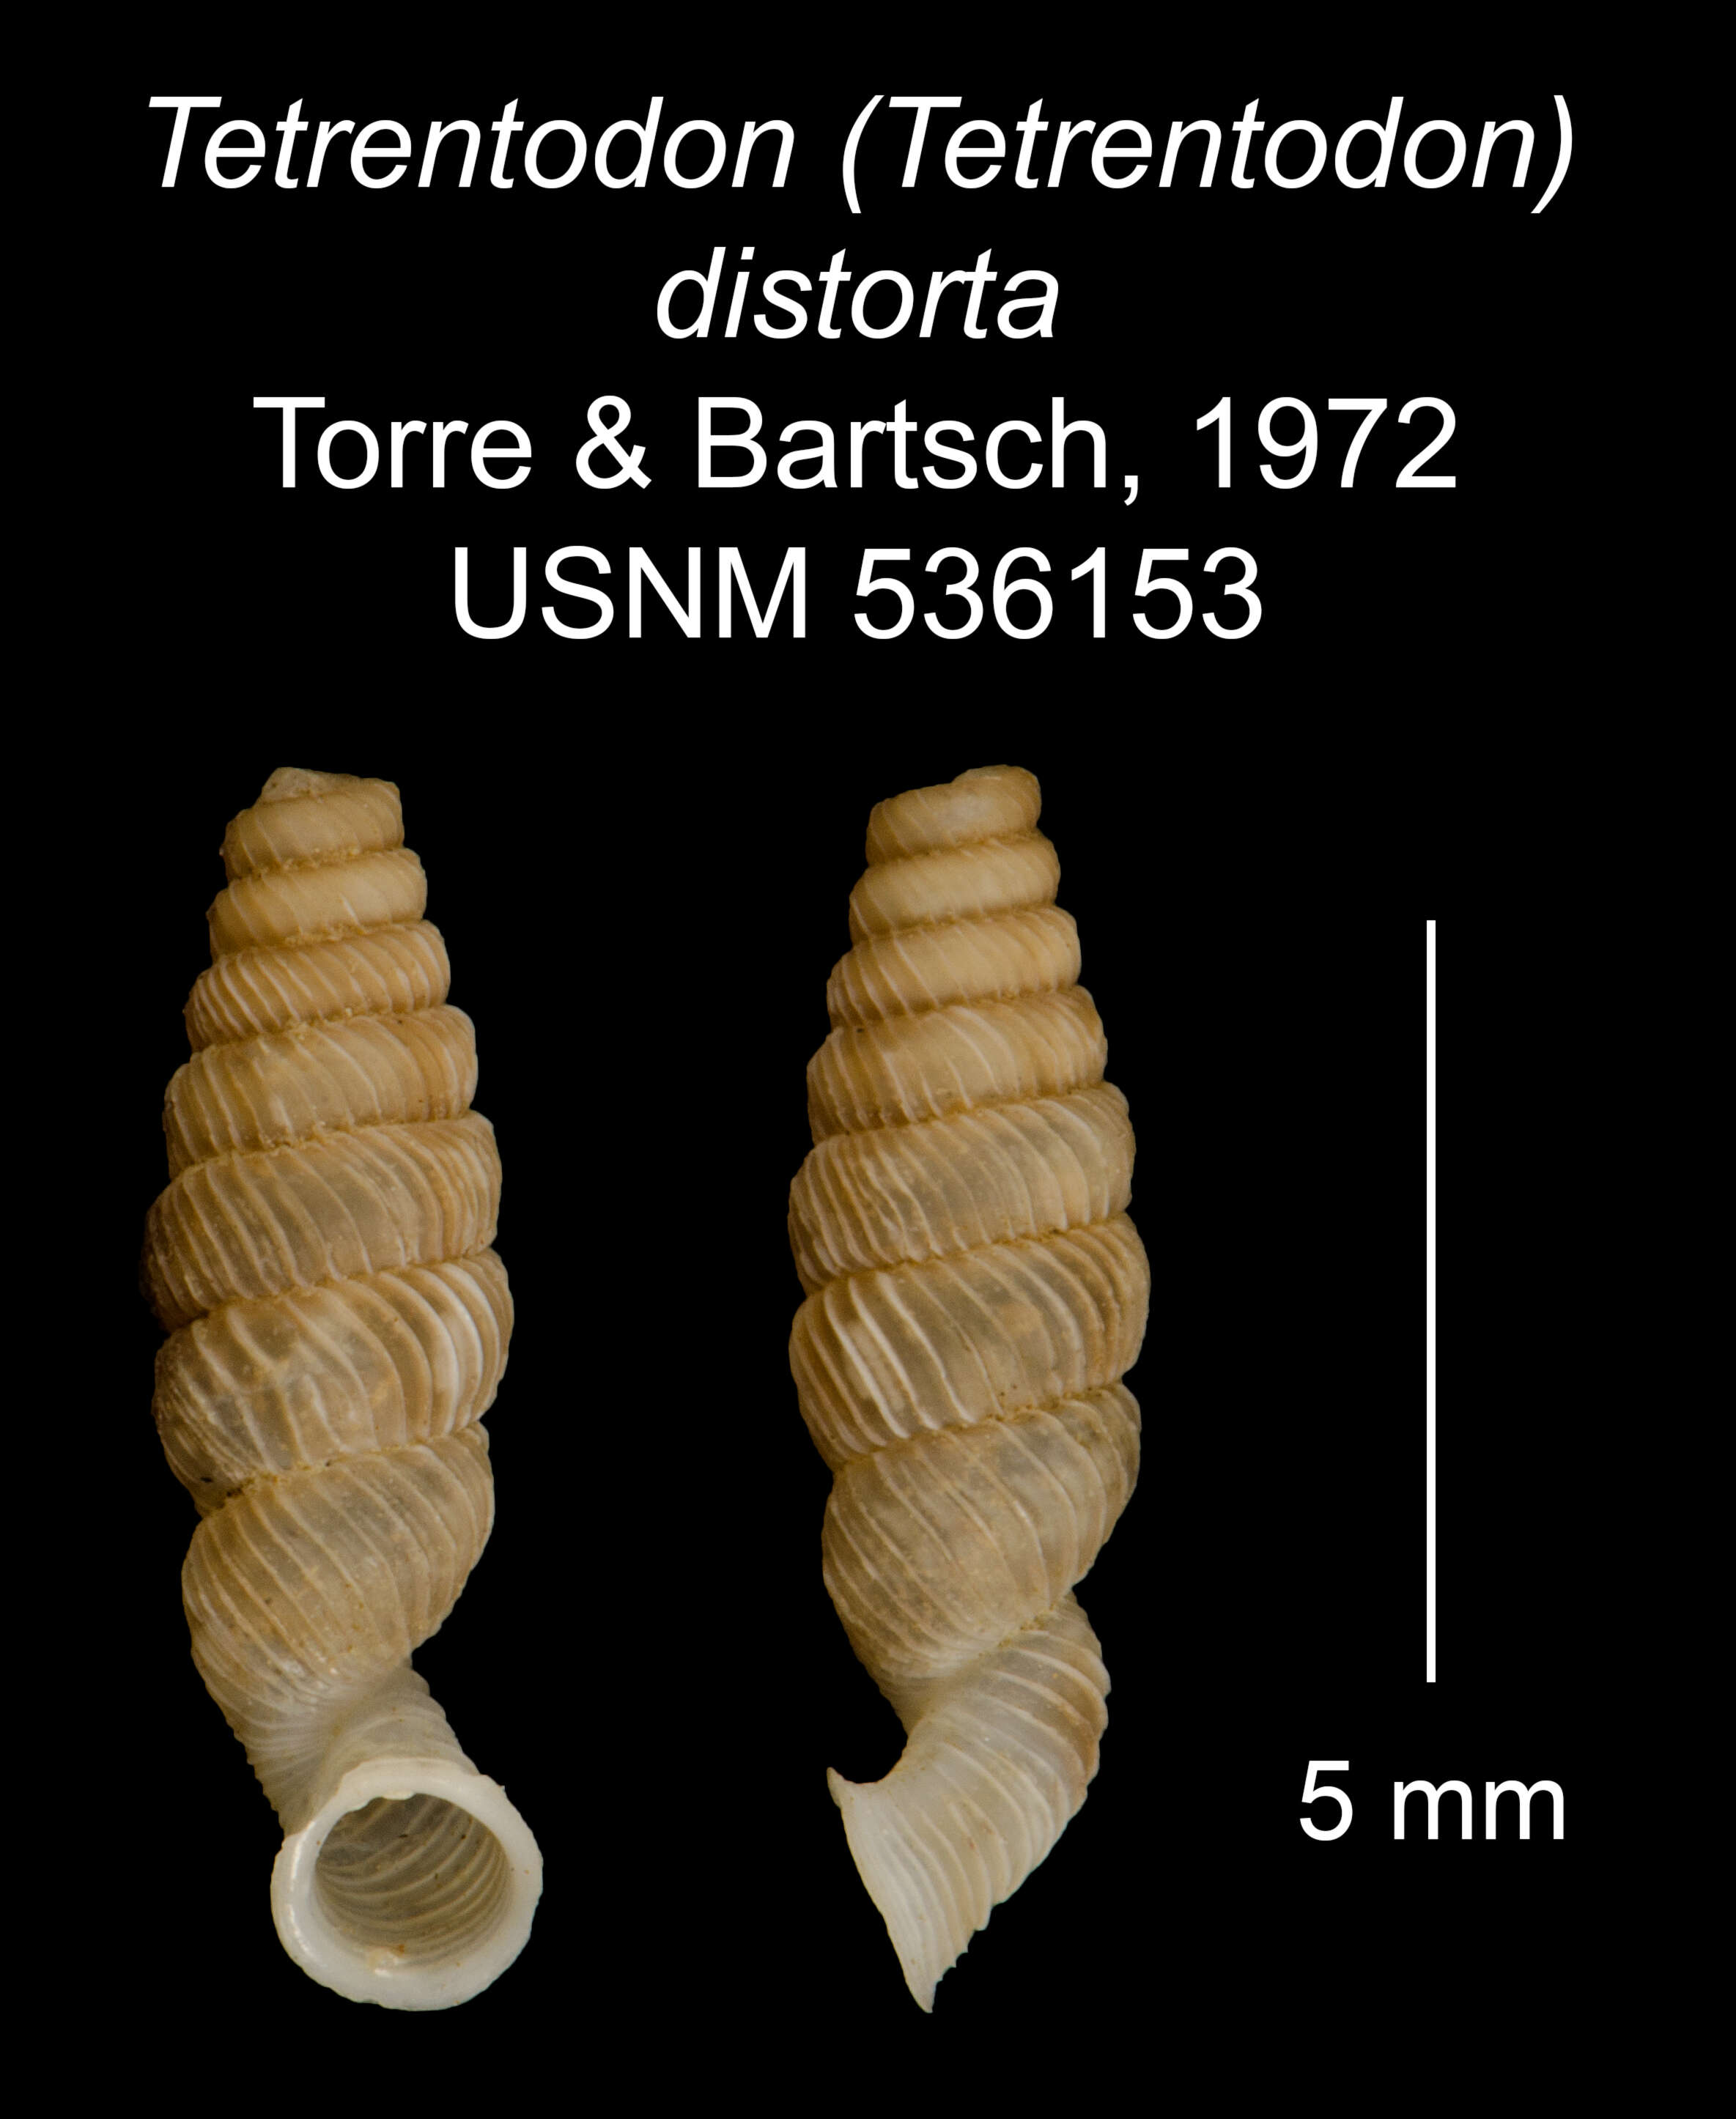 Image of Tetrentodon distortus C. de la Torre & Bartsch 1972